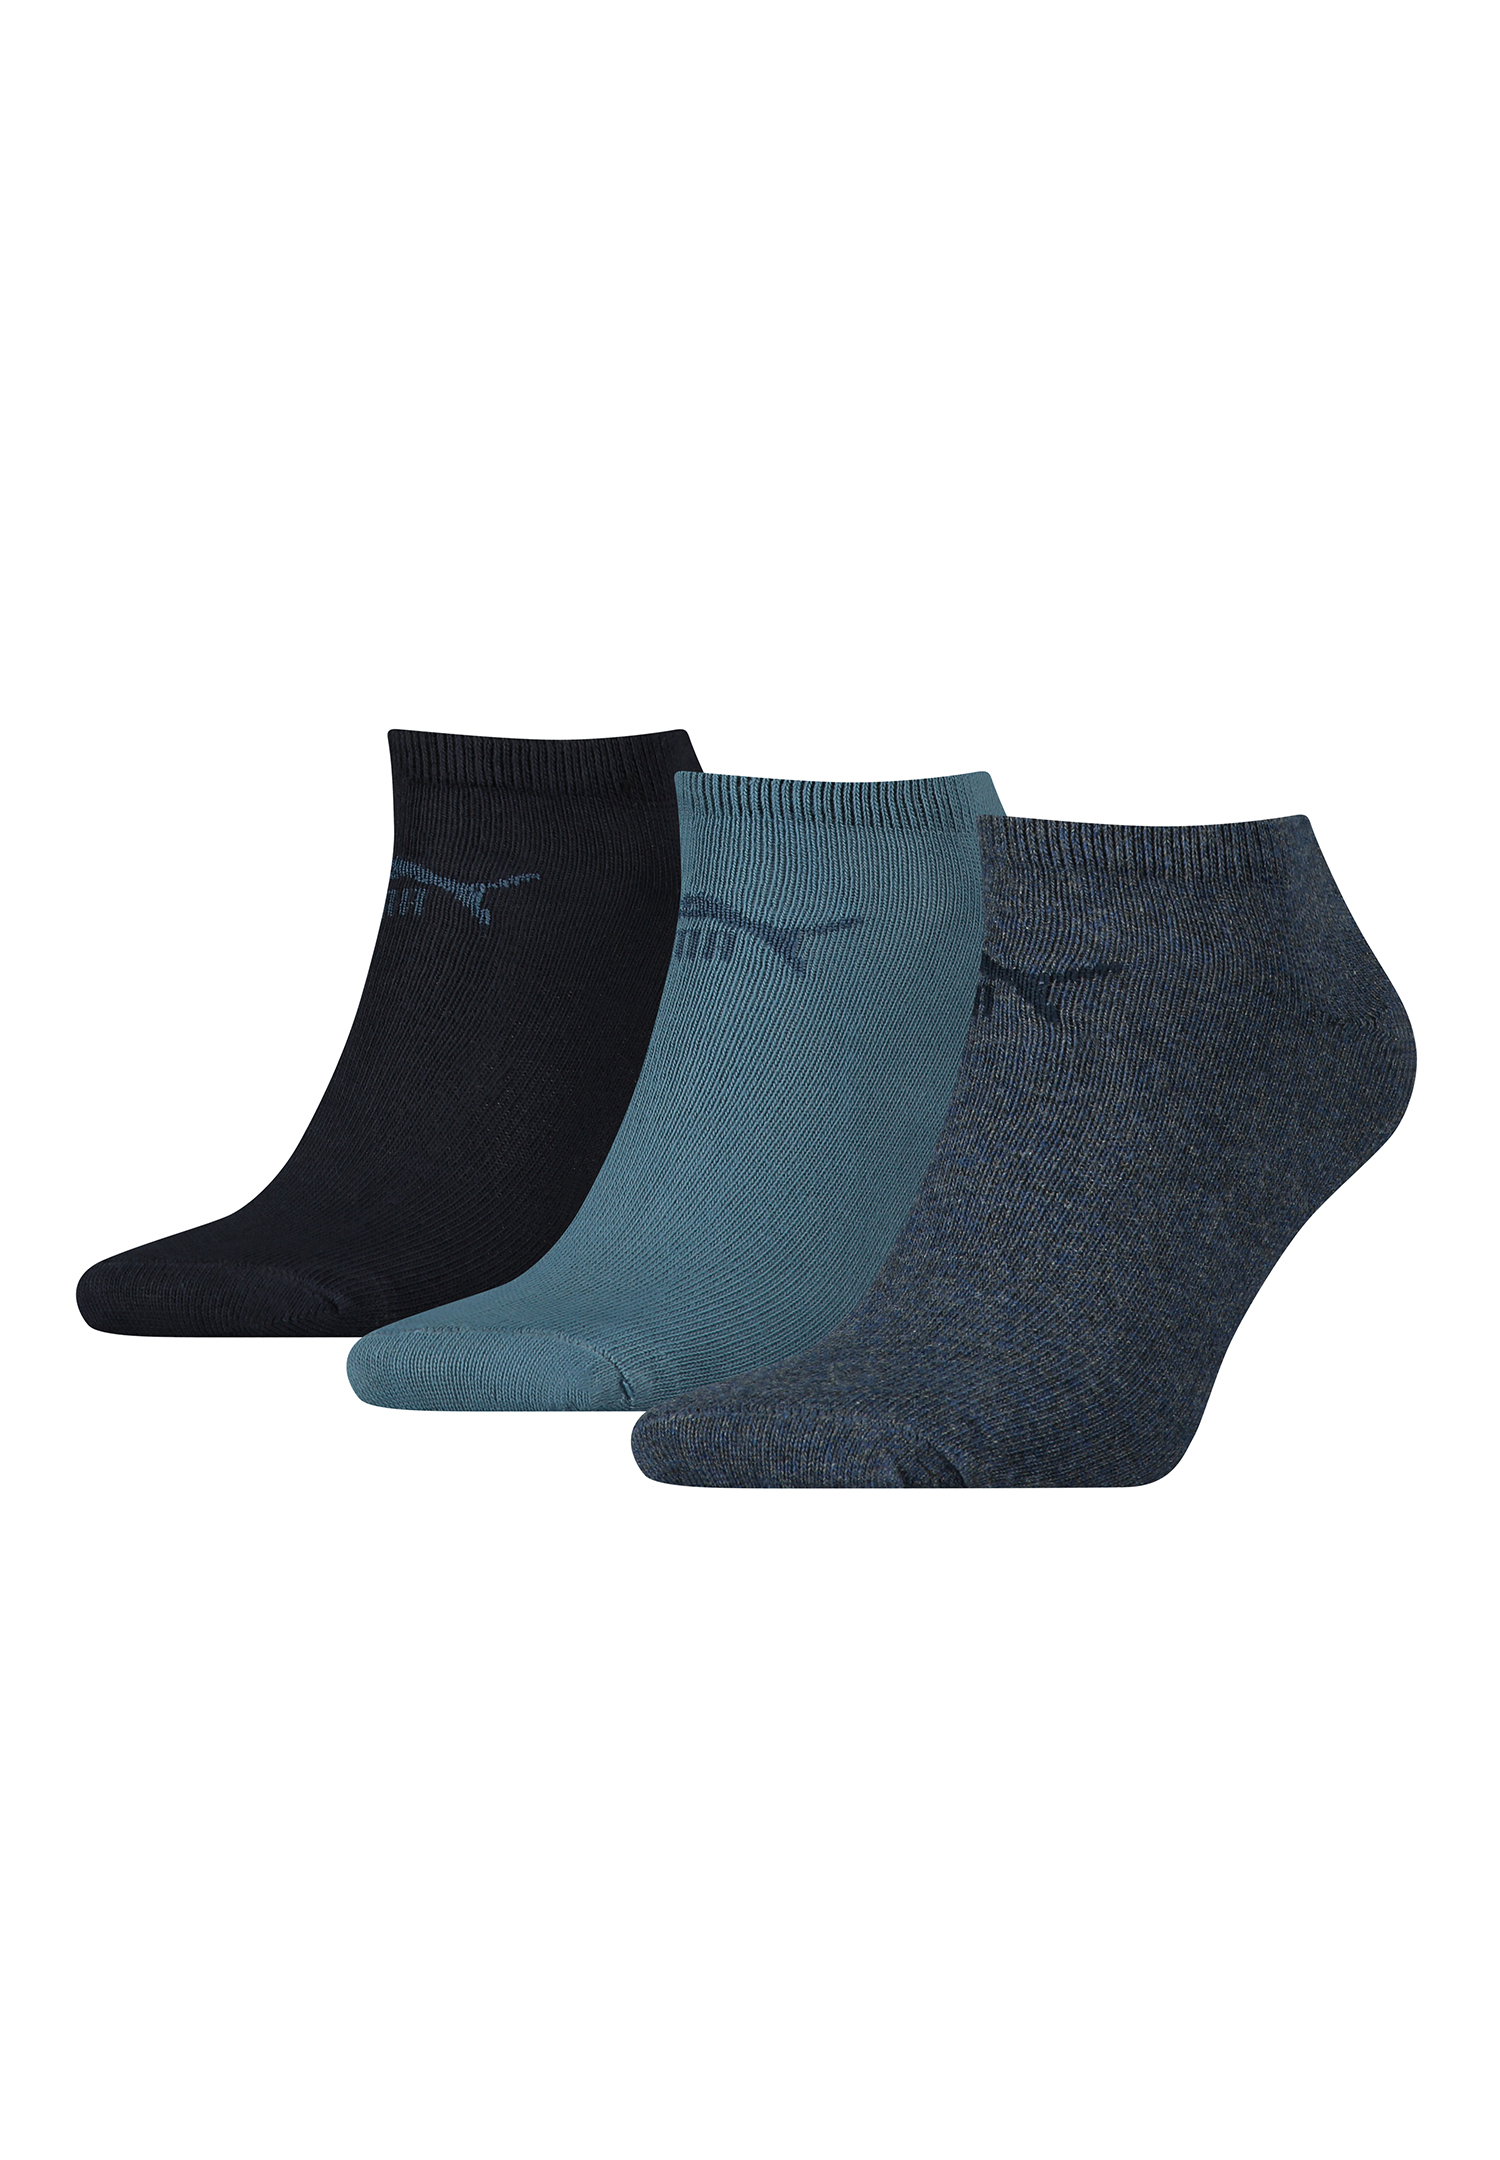 Puma Unisex Sneaker Socken im Retro Design knöchelhoch für Damen Herren 3er Pack